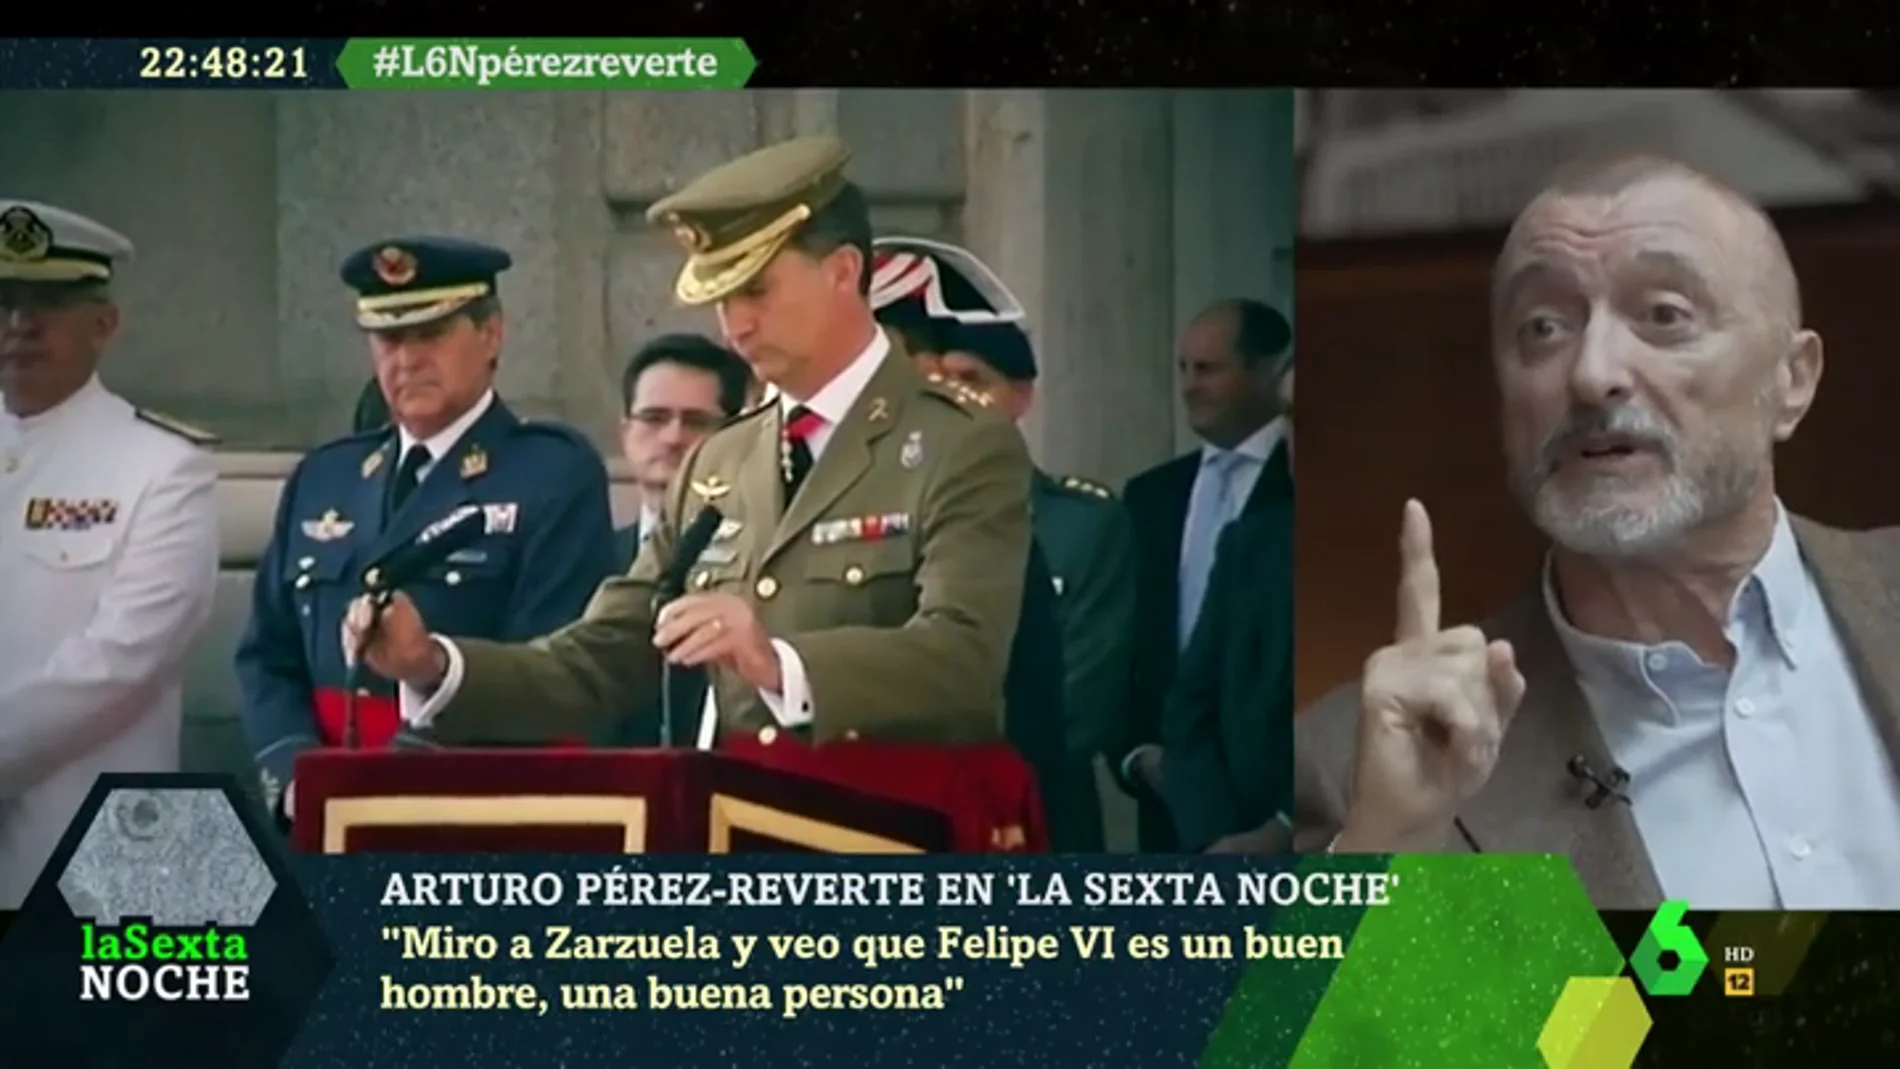 Arturo Pérez-Reverte: "Soy republicano pero Felipe VI es una buena persona. ¿Se imaginan a Zapatero, Rajoy o Aznar como presidentes de la República?"